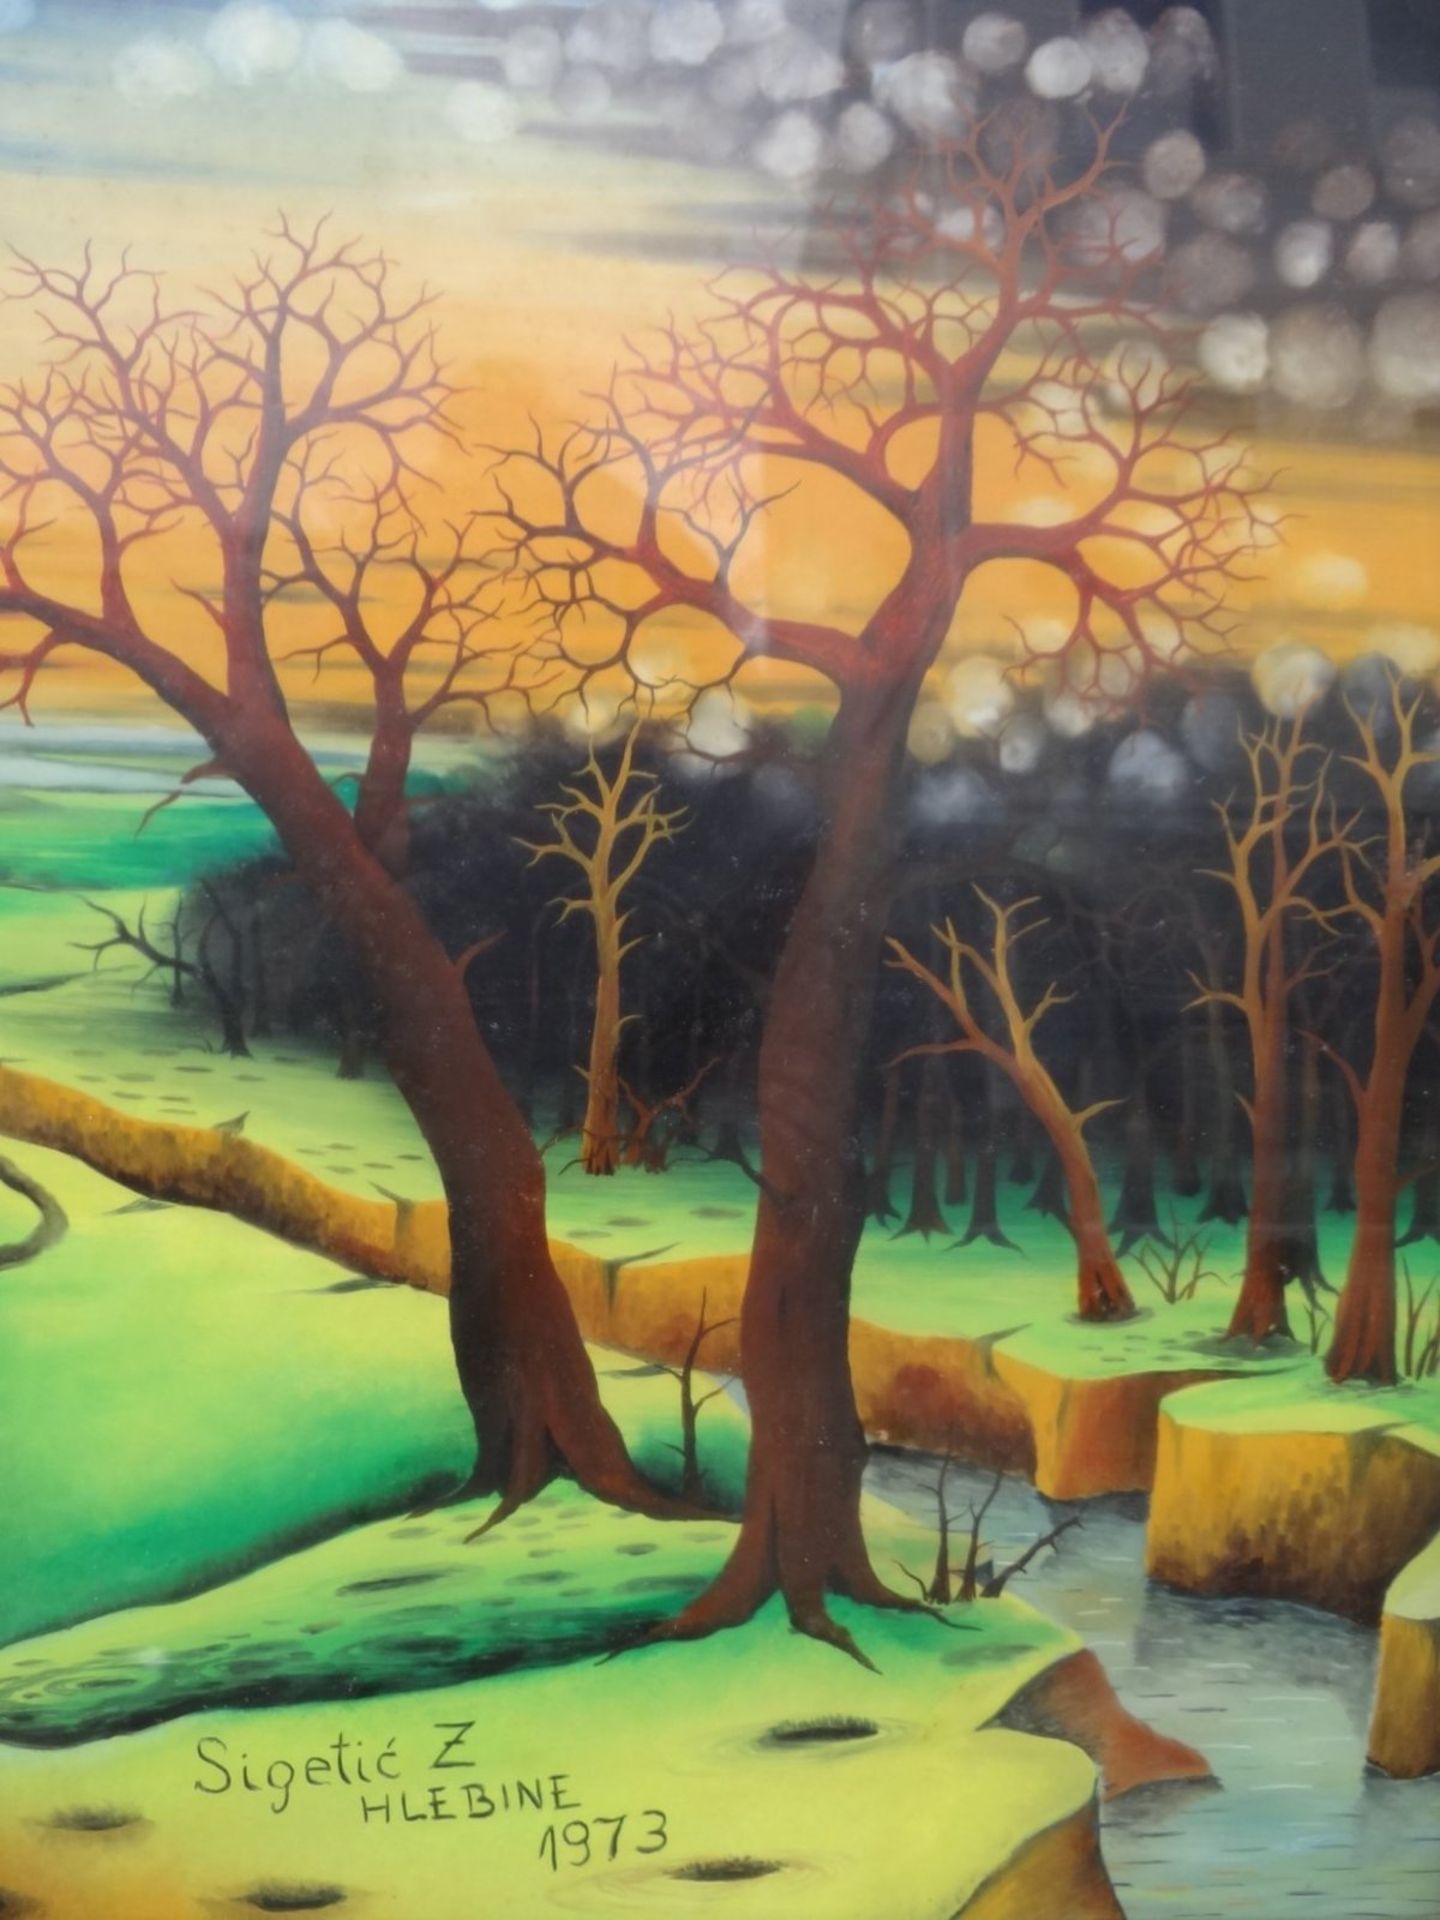 Sigetic Z., 1973 "Bäume im Herbst" naive Hinterglasmalerei, gerahmt, RG 44x44 cm - Bild 2 aus 5